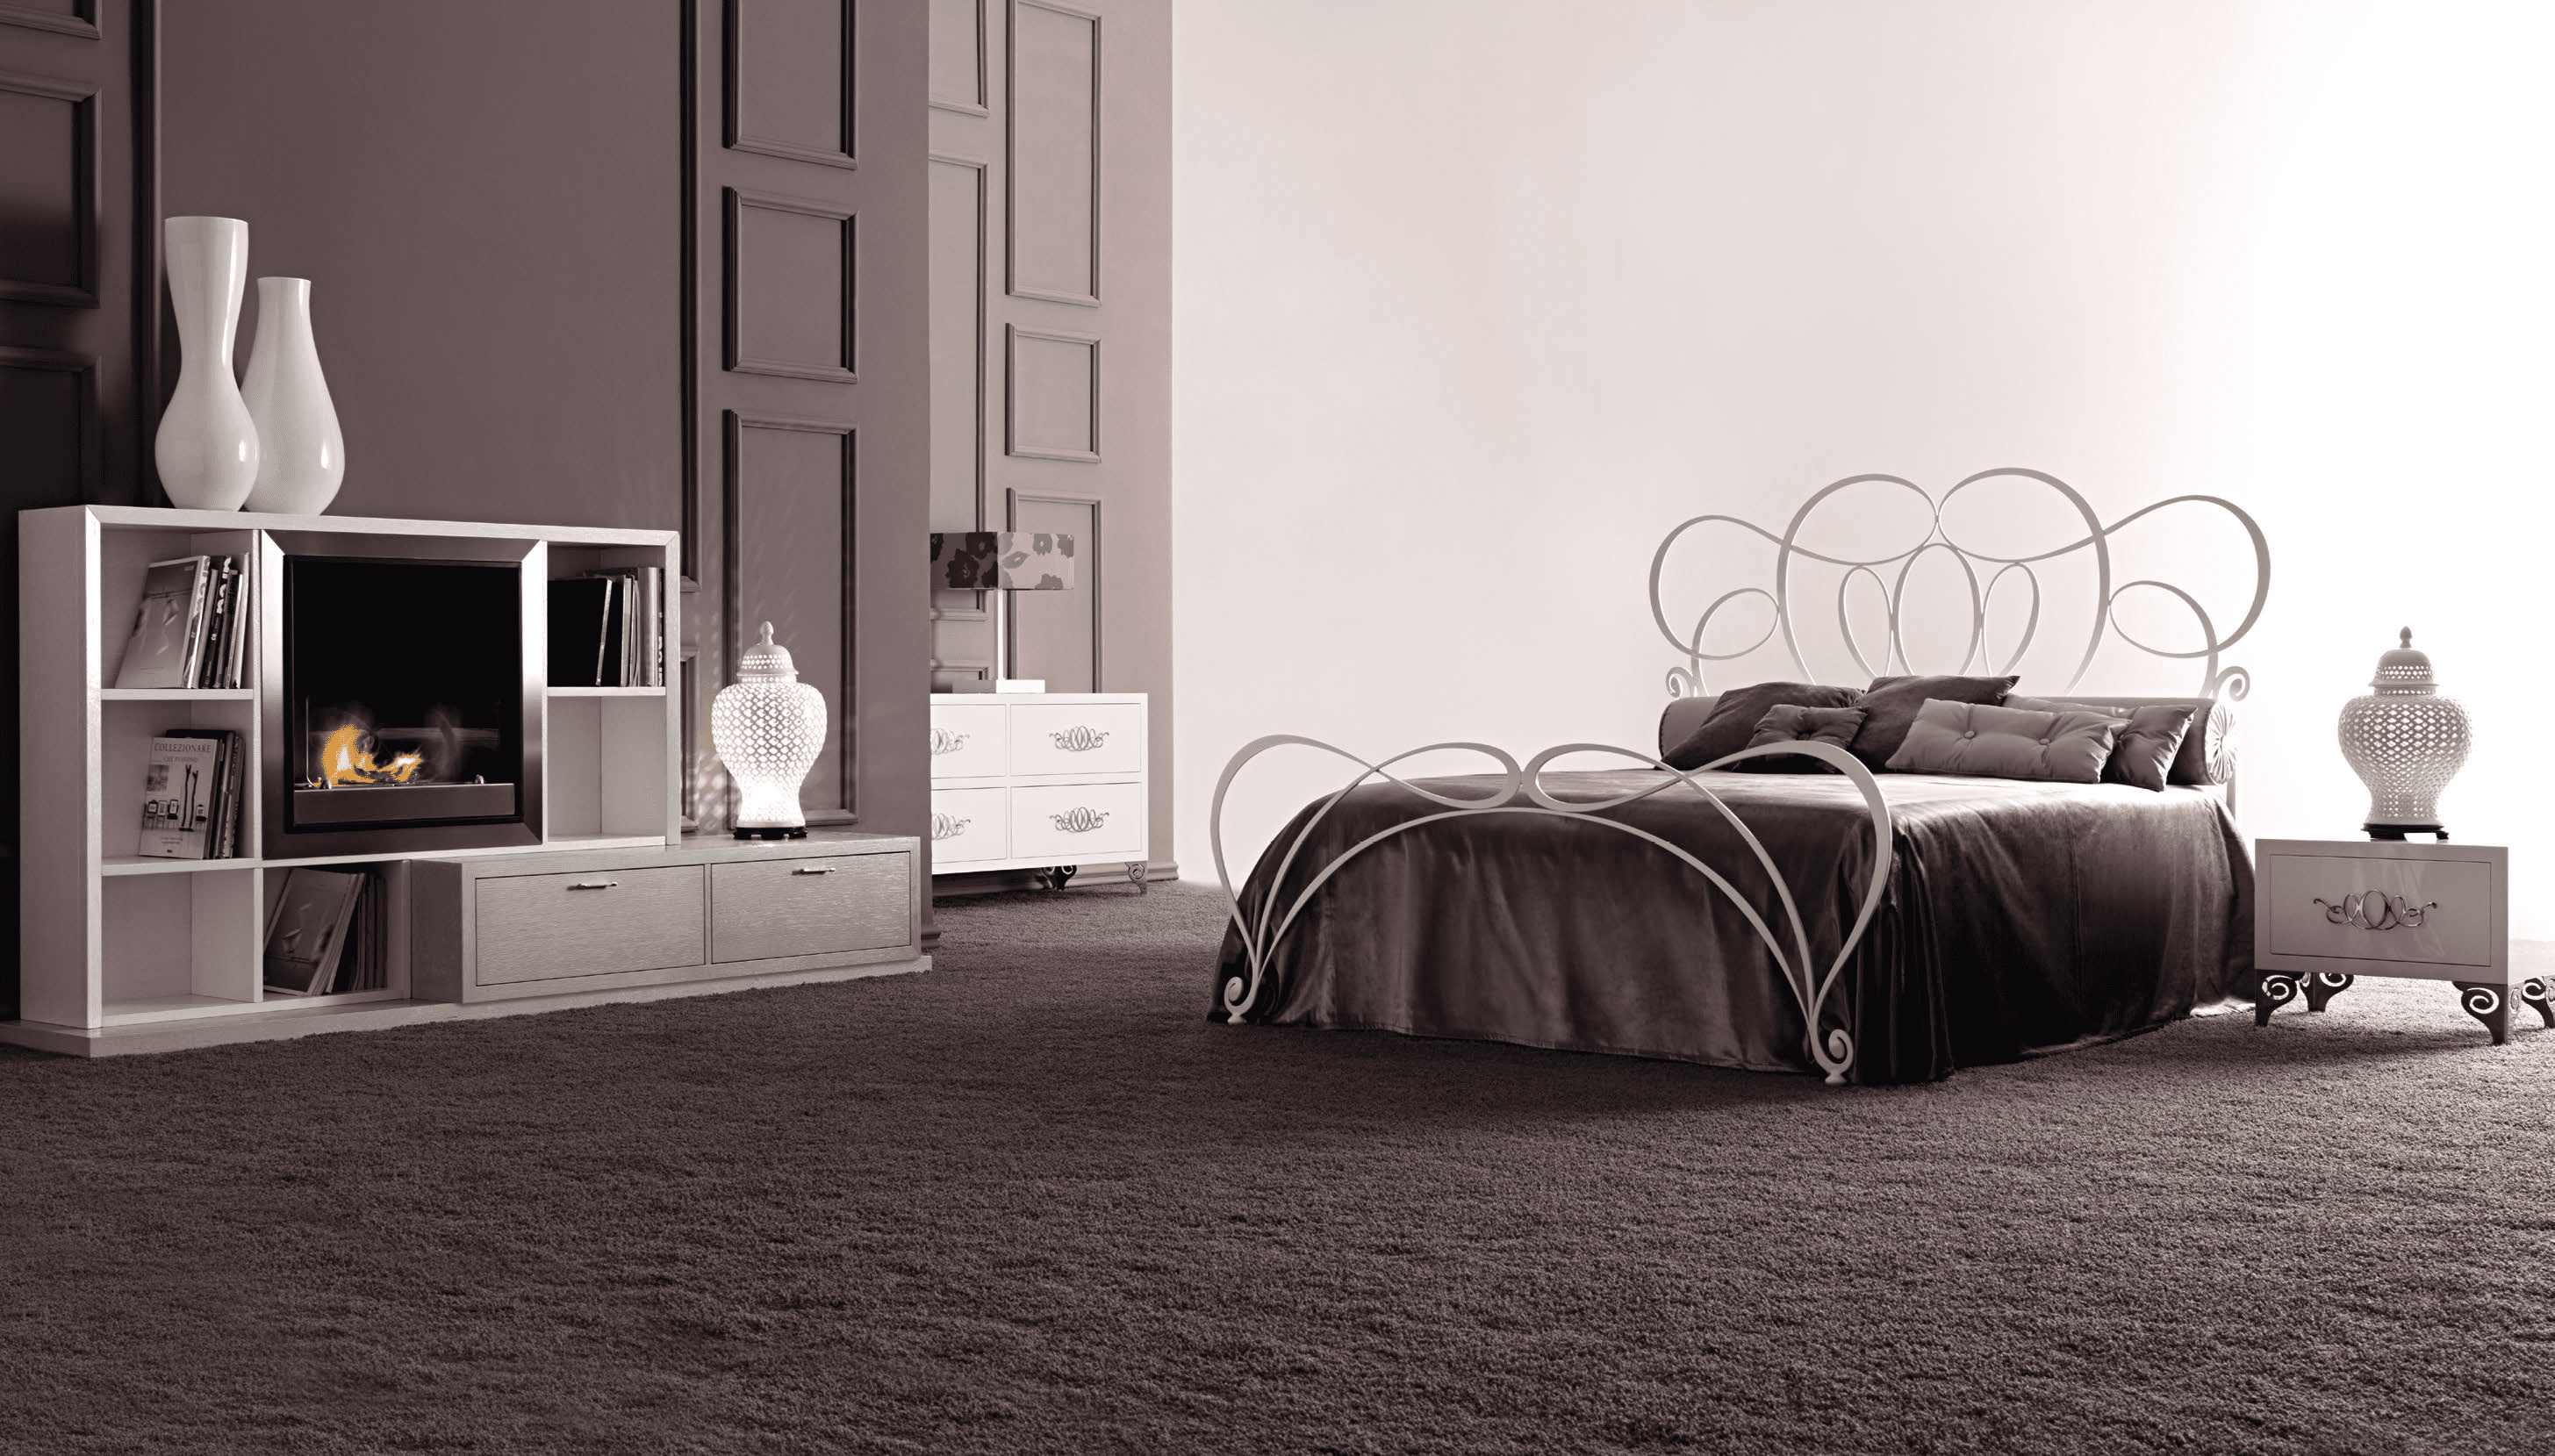 Спальня PALOMA из коллекции Home 01 из Италии